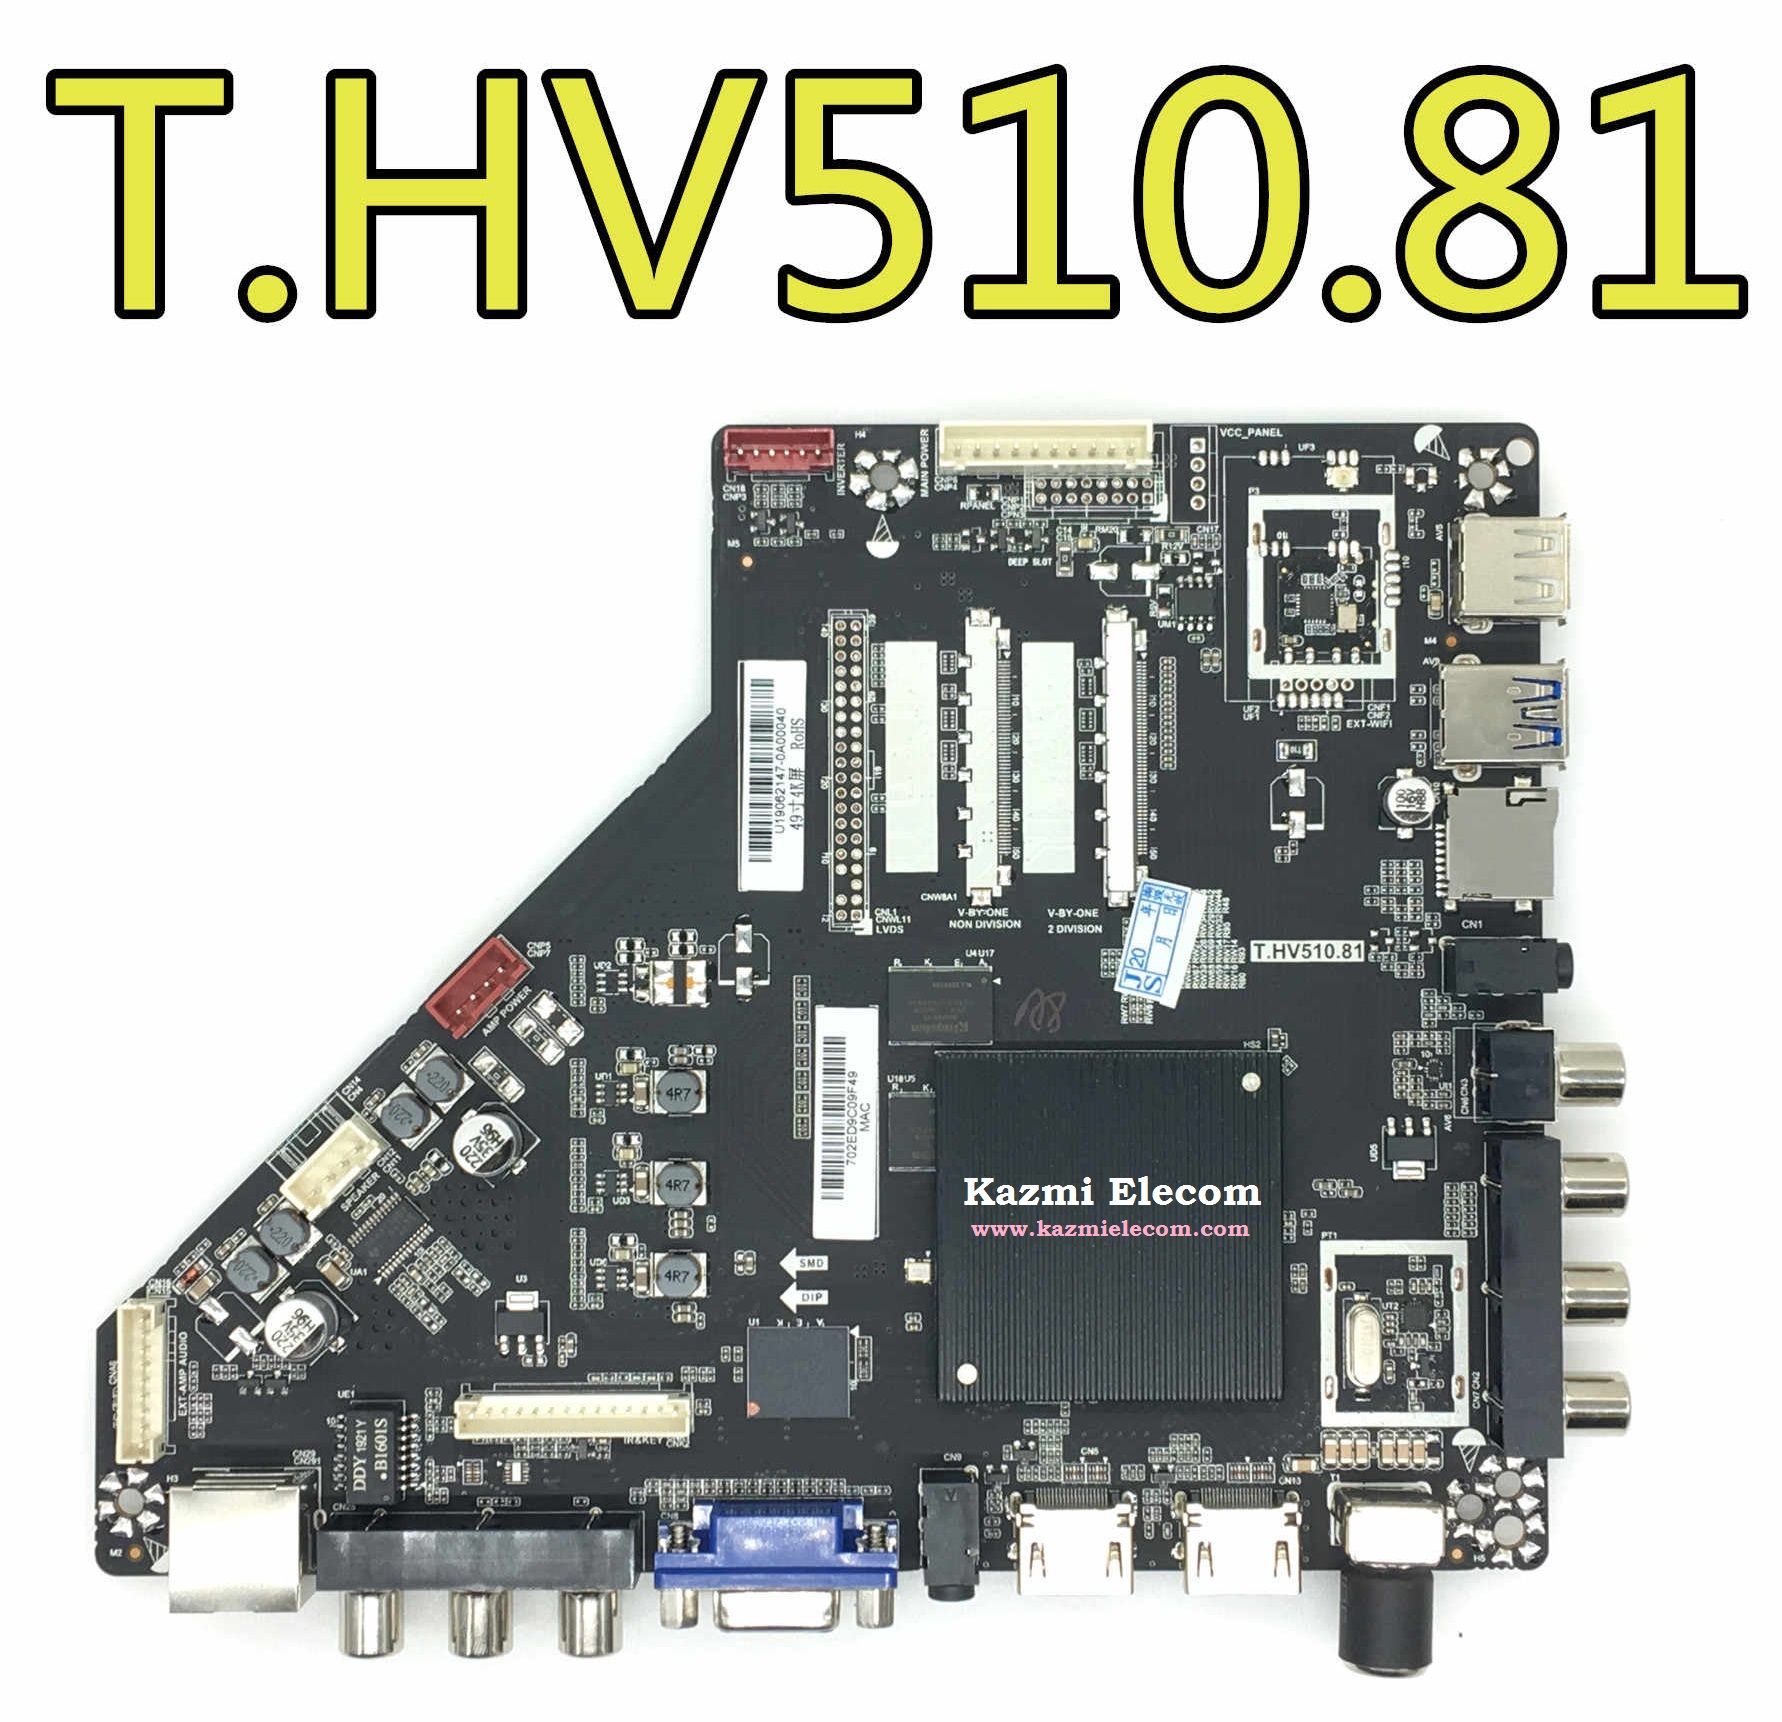 T.hv510.81_Firmware